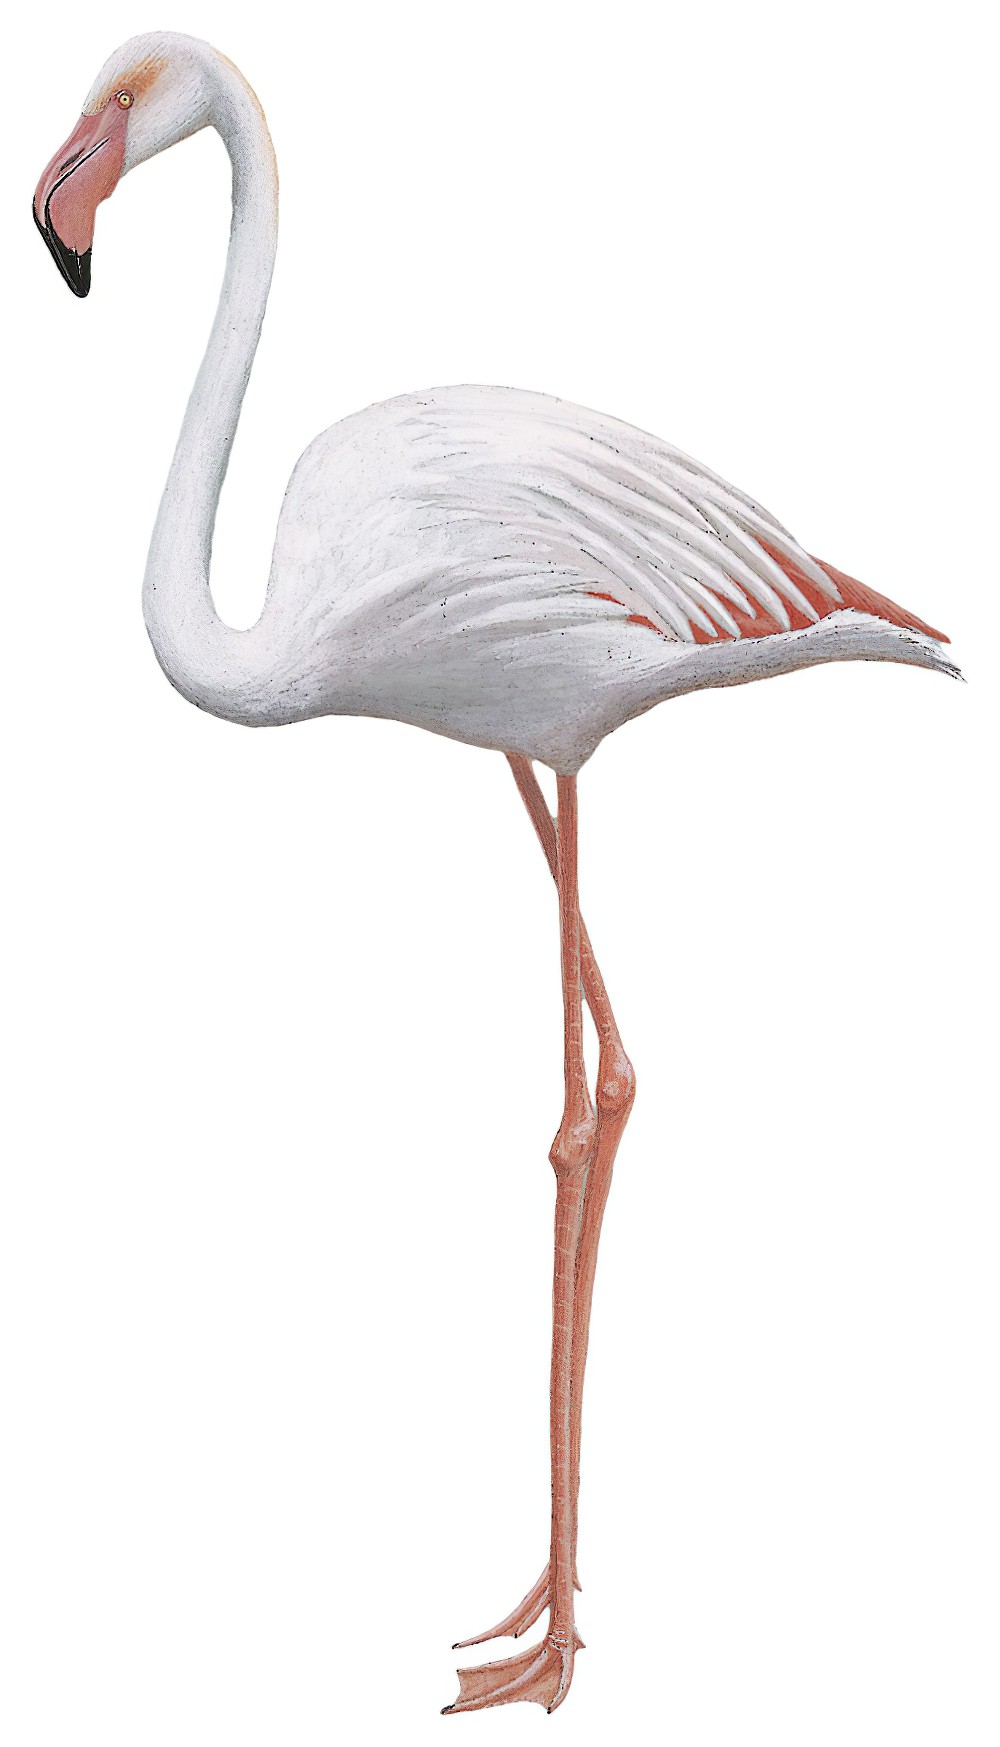 Greater Flamingo / Phoenicopterus roseus